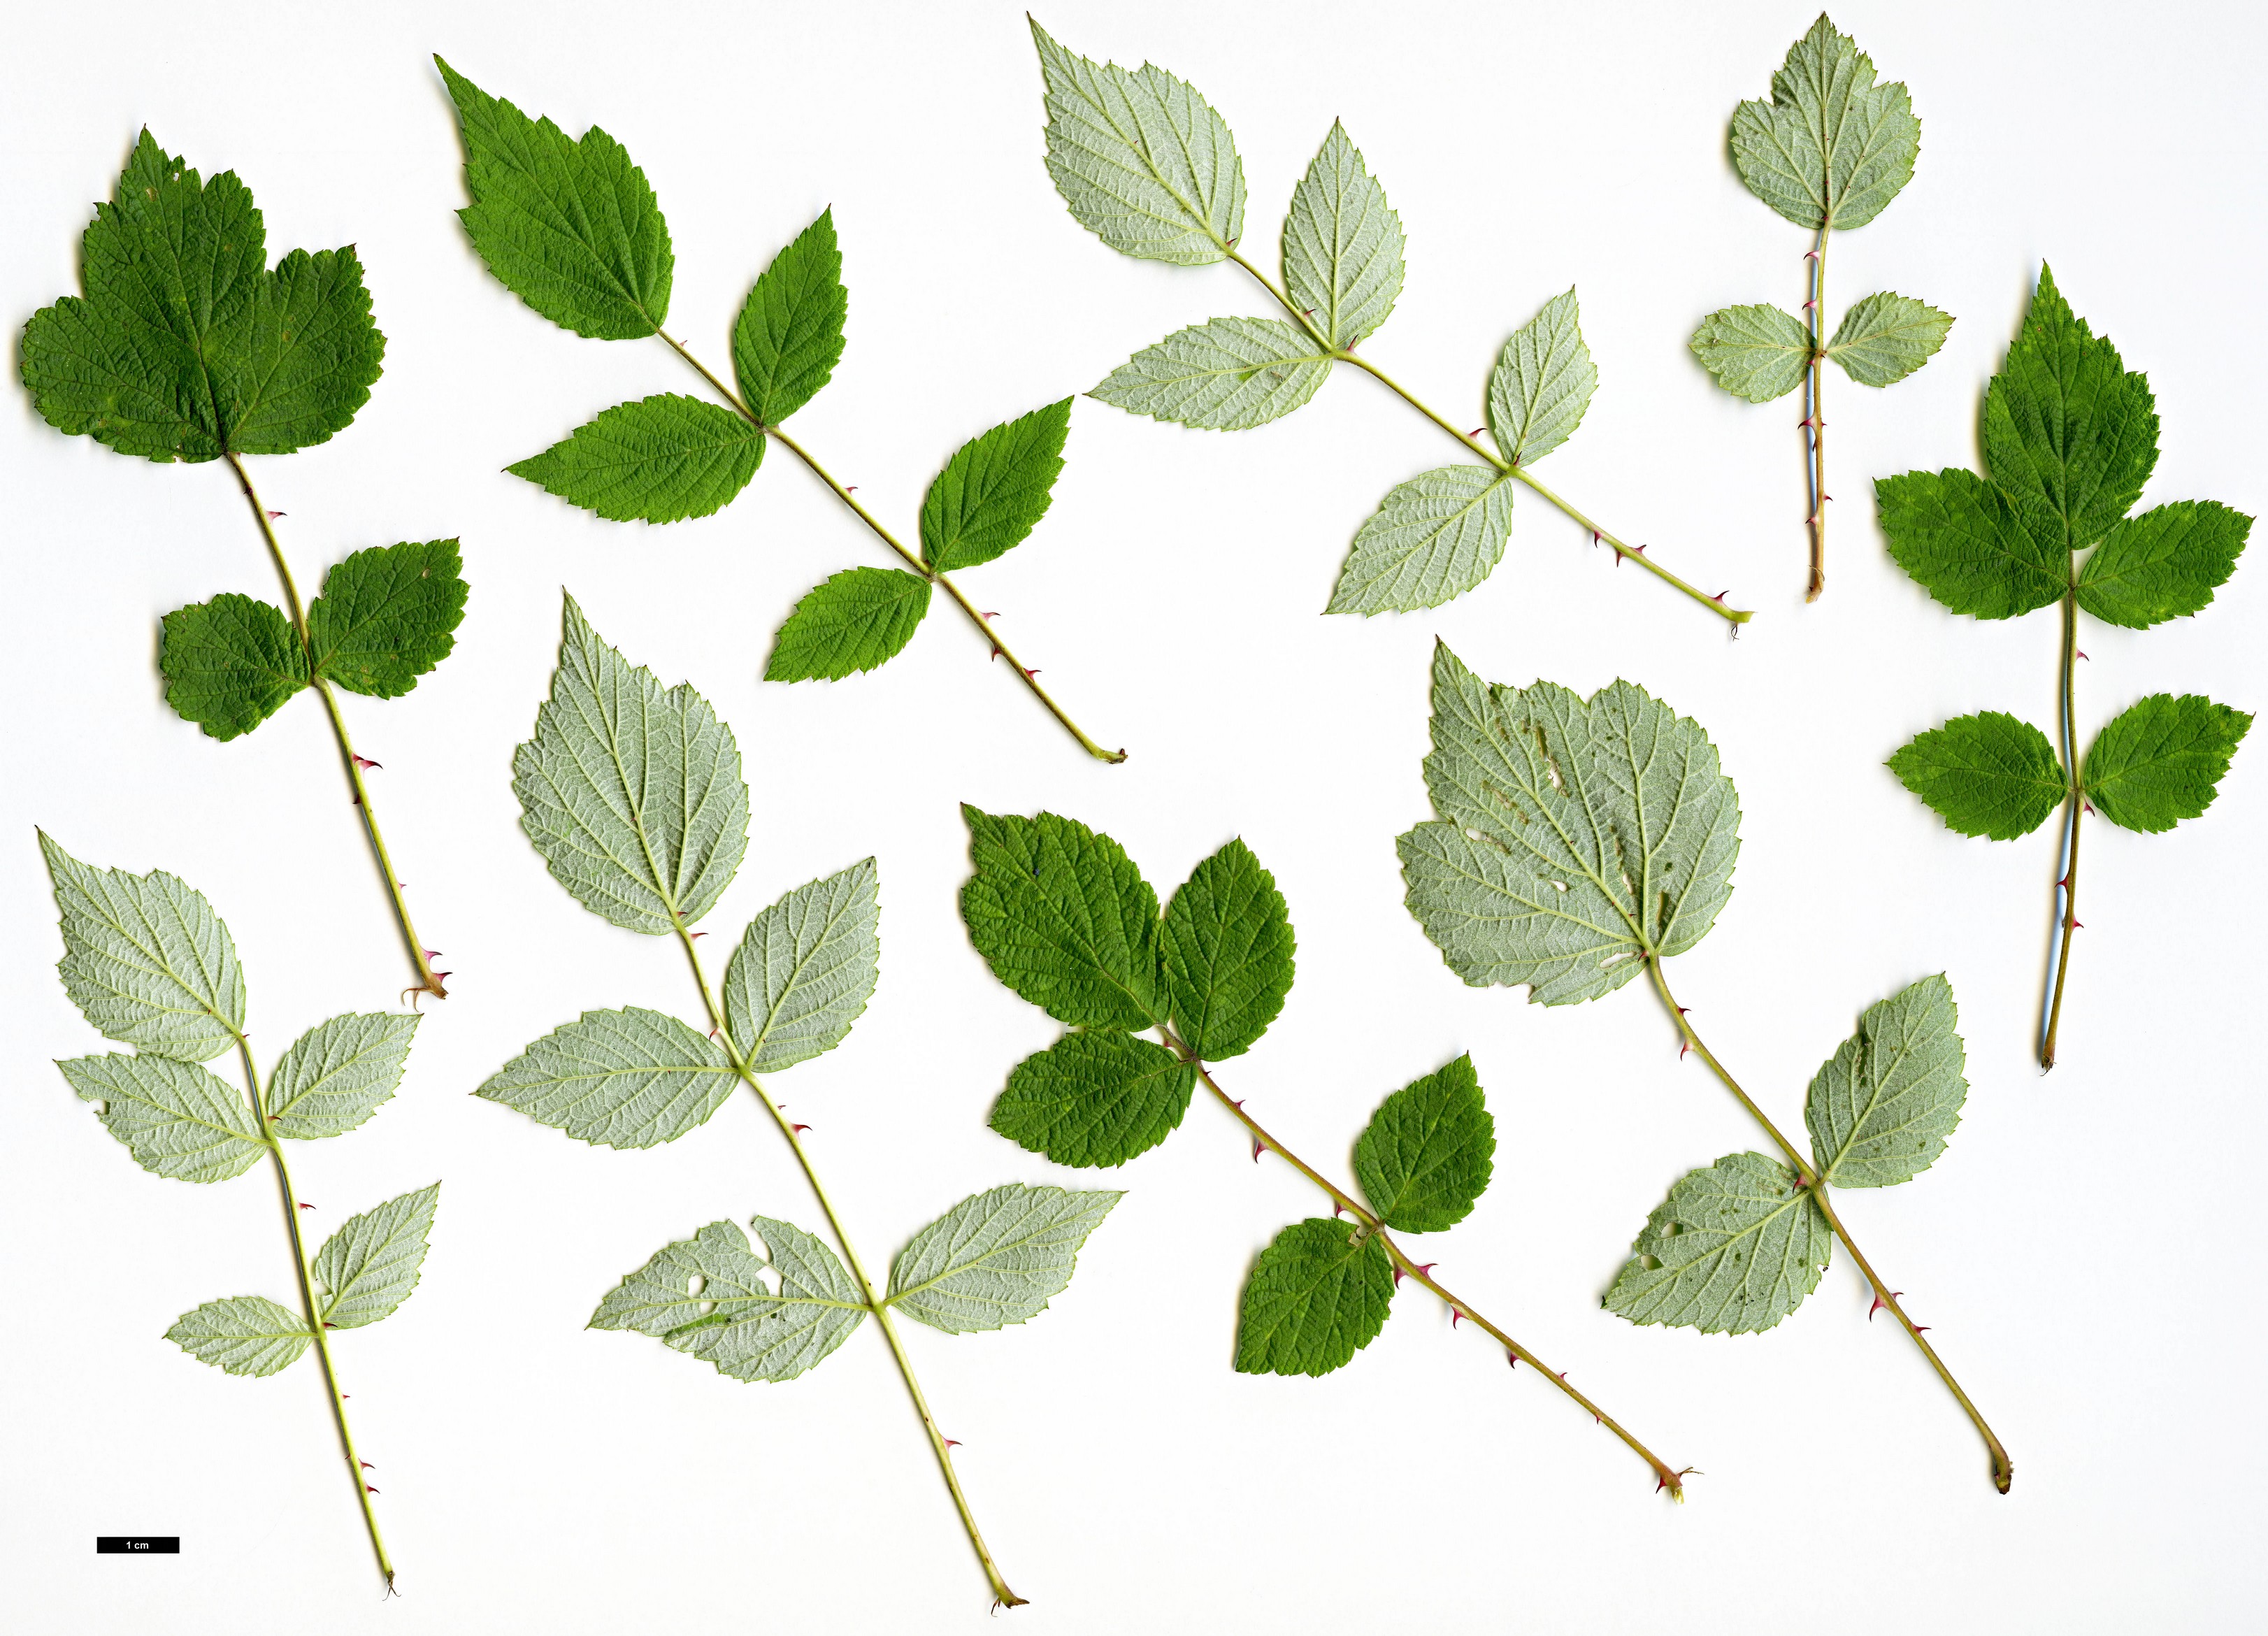 High resolution image: Family: Rosaceae - Genus: Rubus - Taxon: incanus